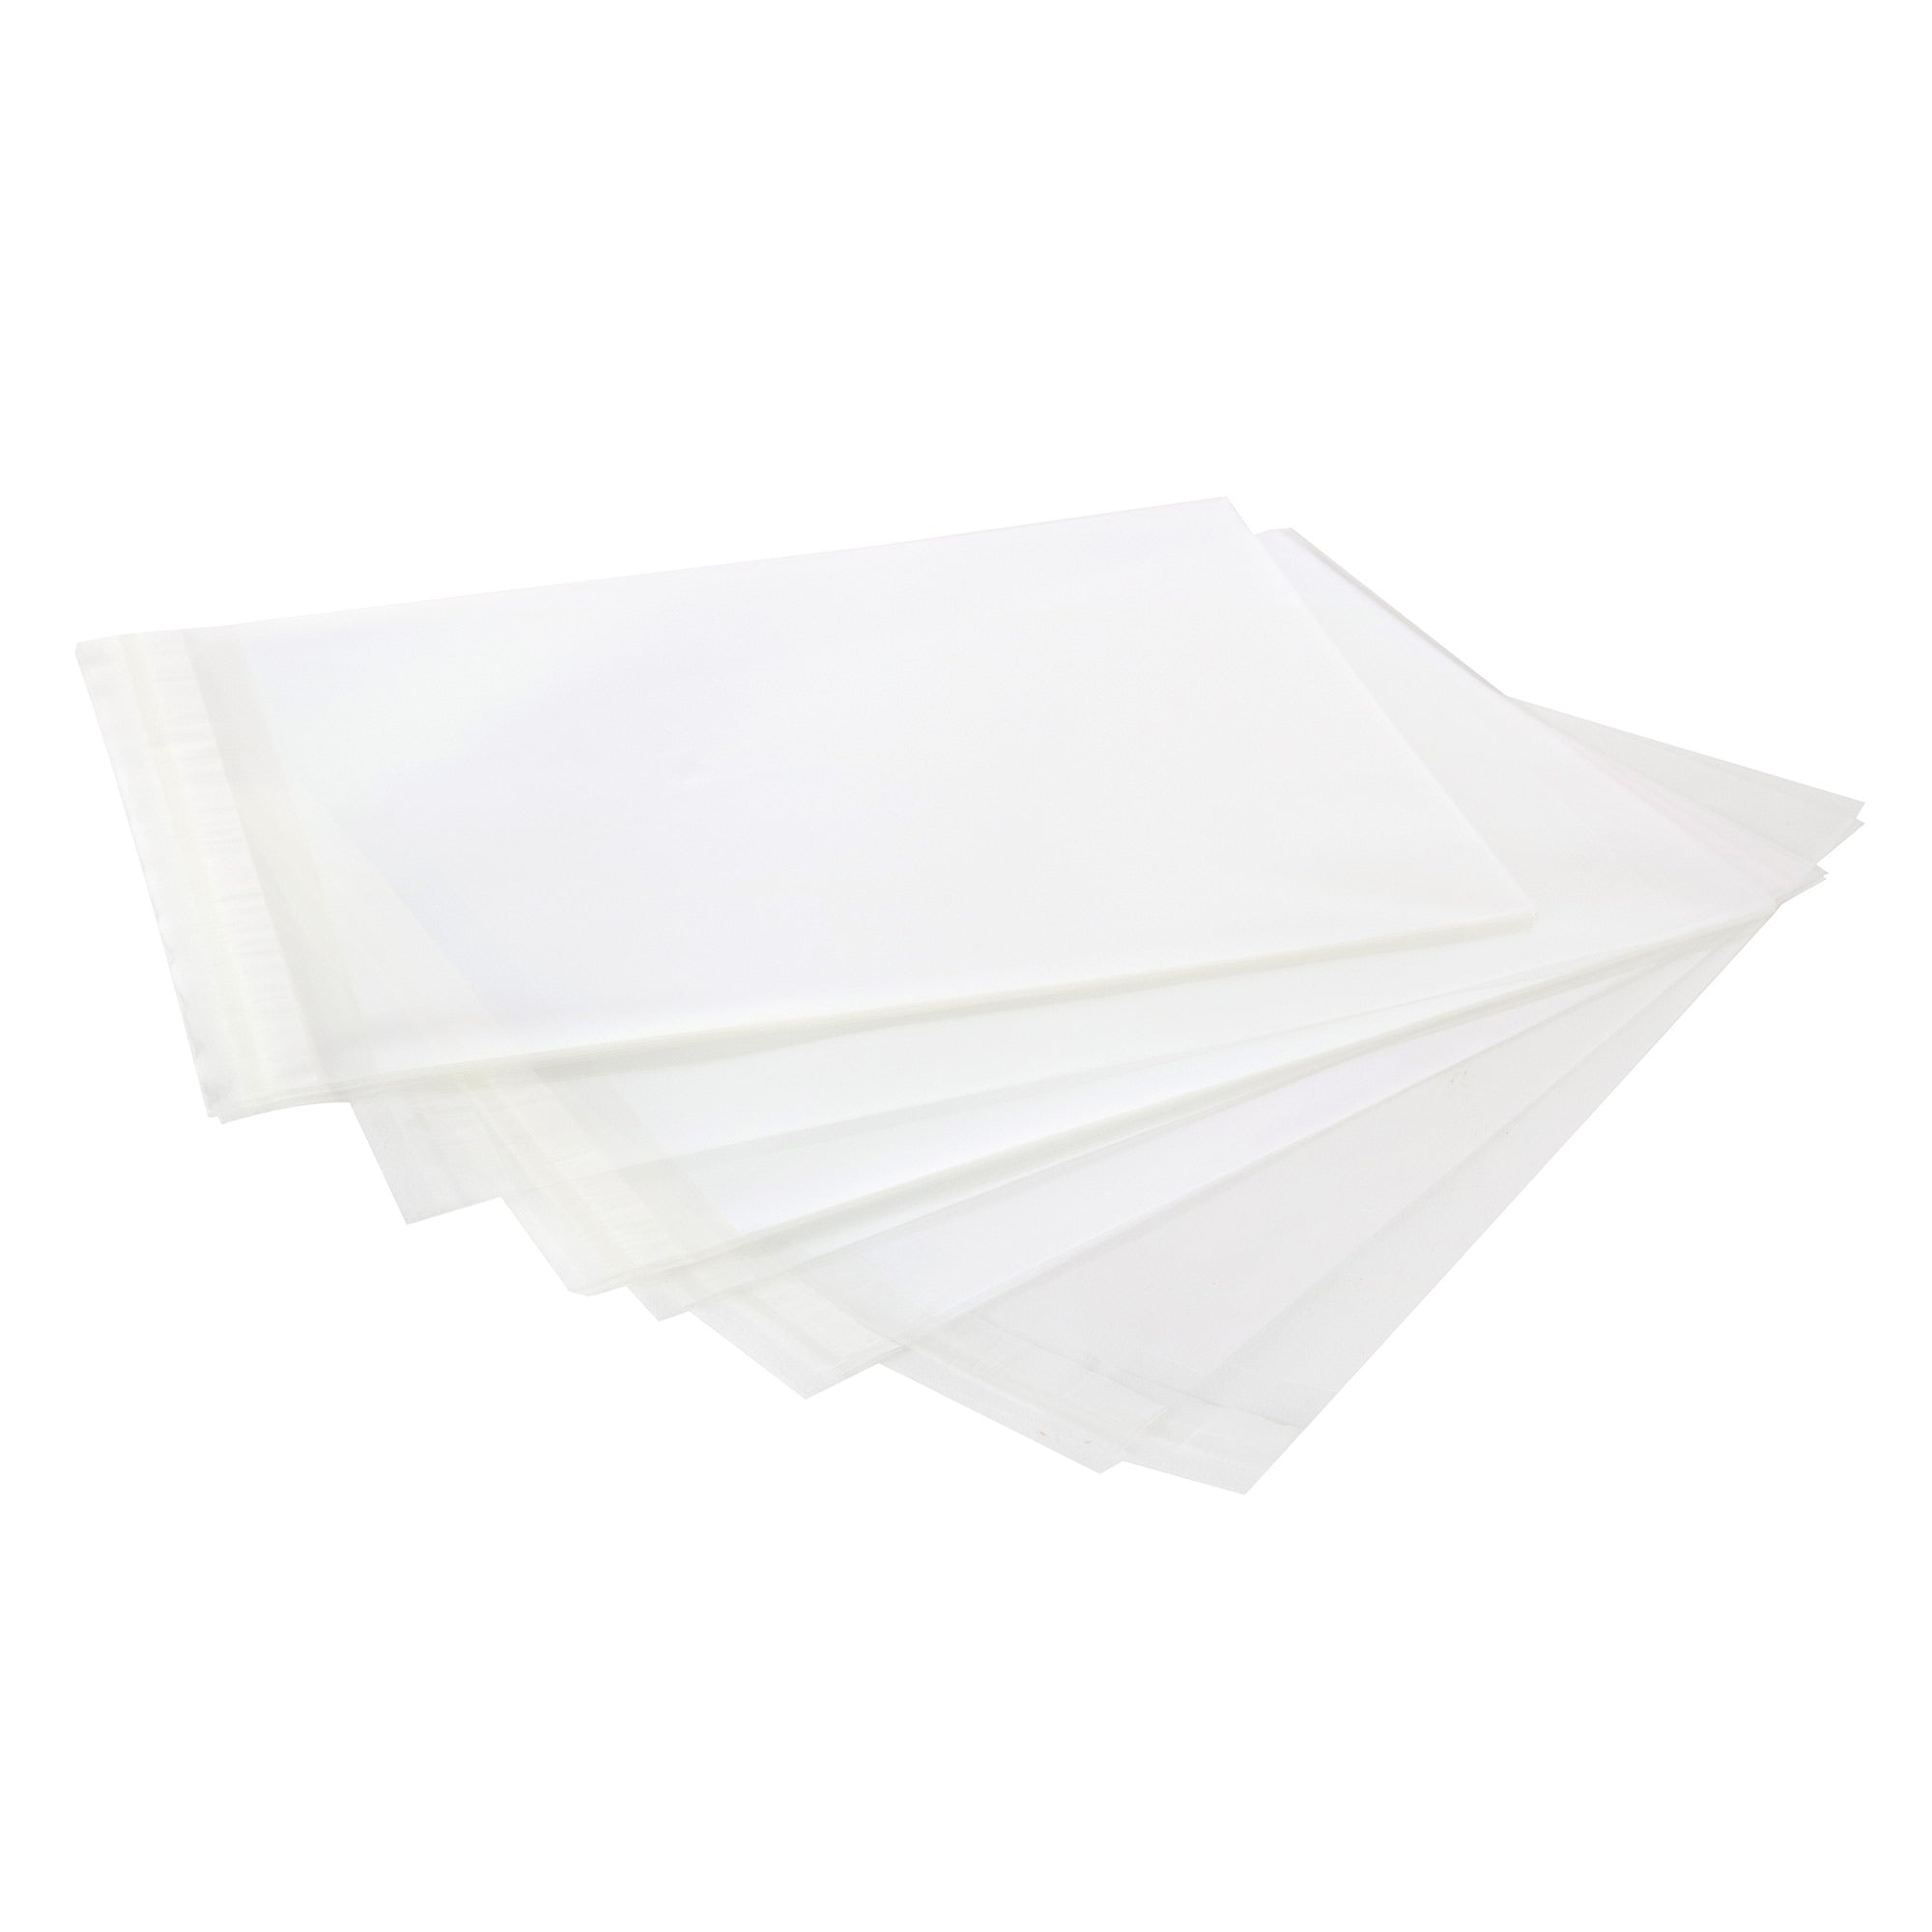 Protège-feuilles transparents de Merangue, format lettre, paquet de 40